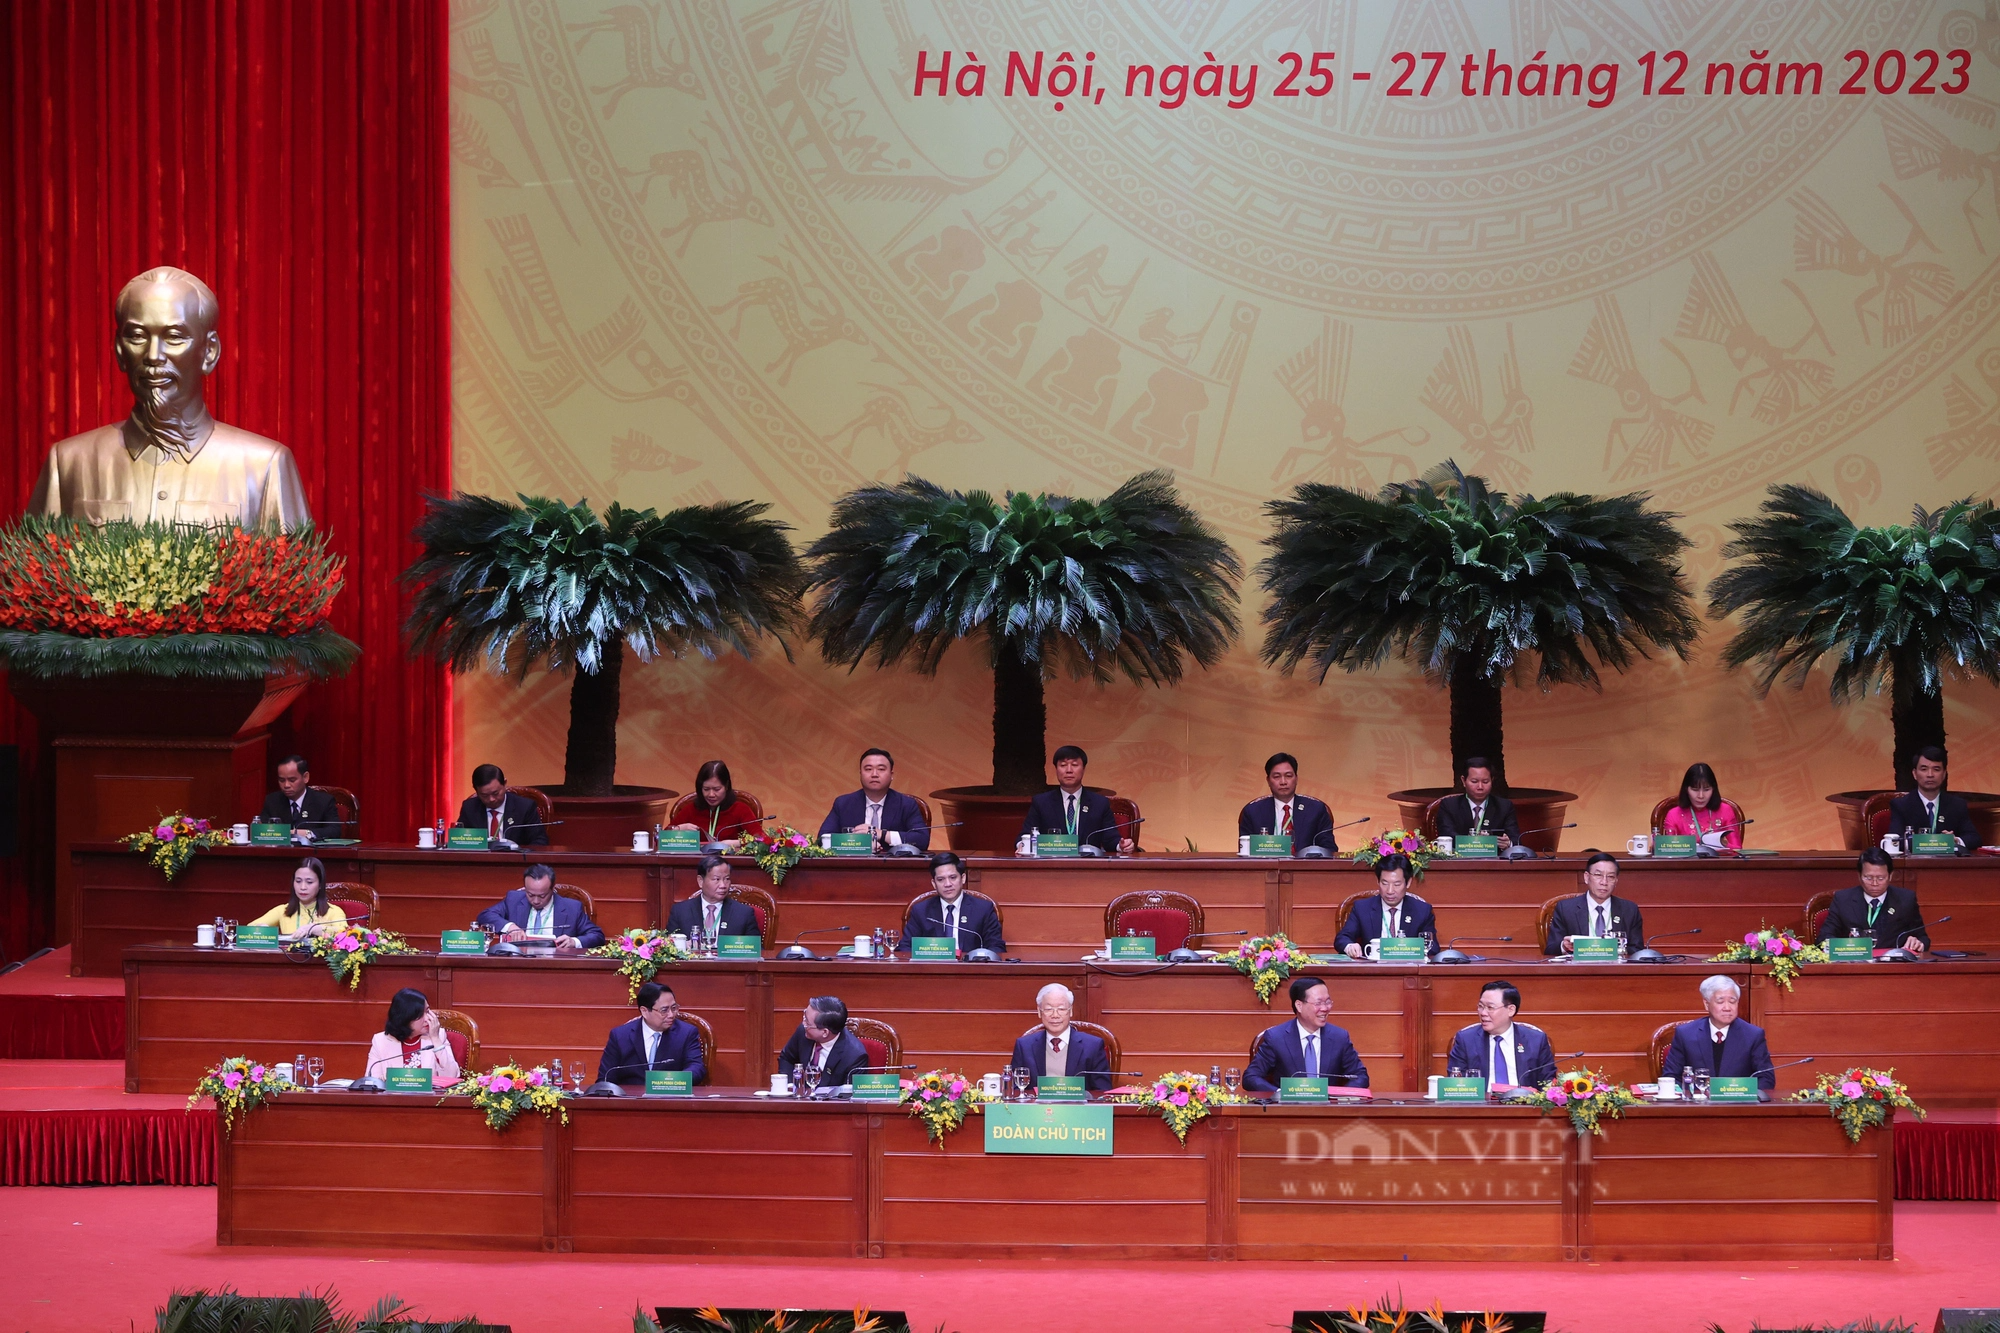 Hình ảnh khai mạc trọng thể Đại hội đại biểu toàn quốc Hội Nông dân Việt Nam lần thứ VIII- Ảnh 3.